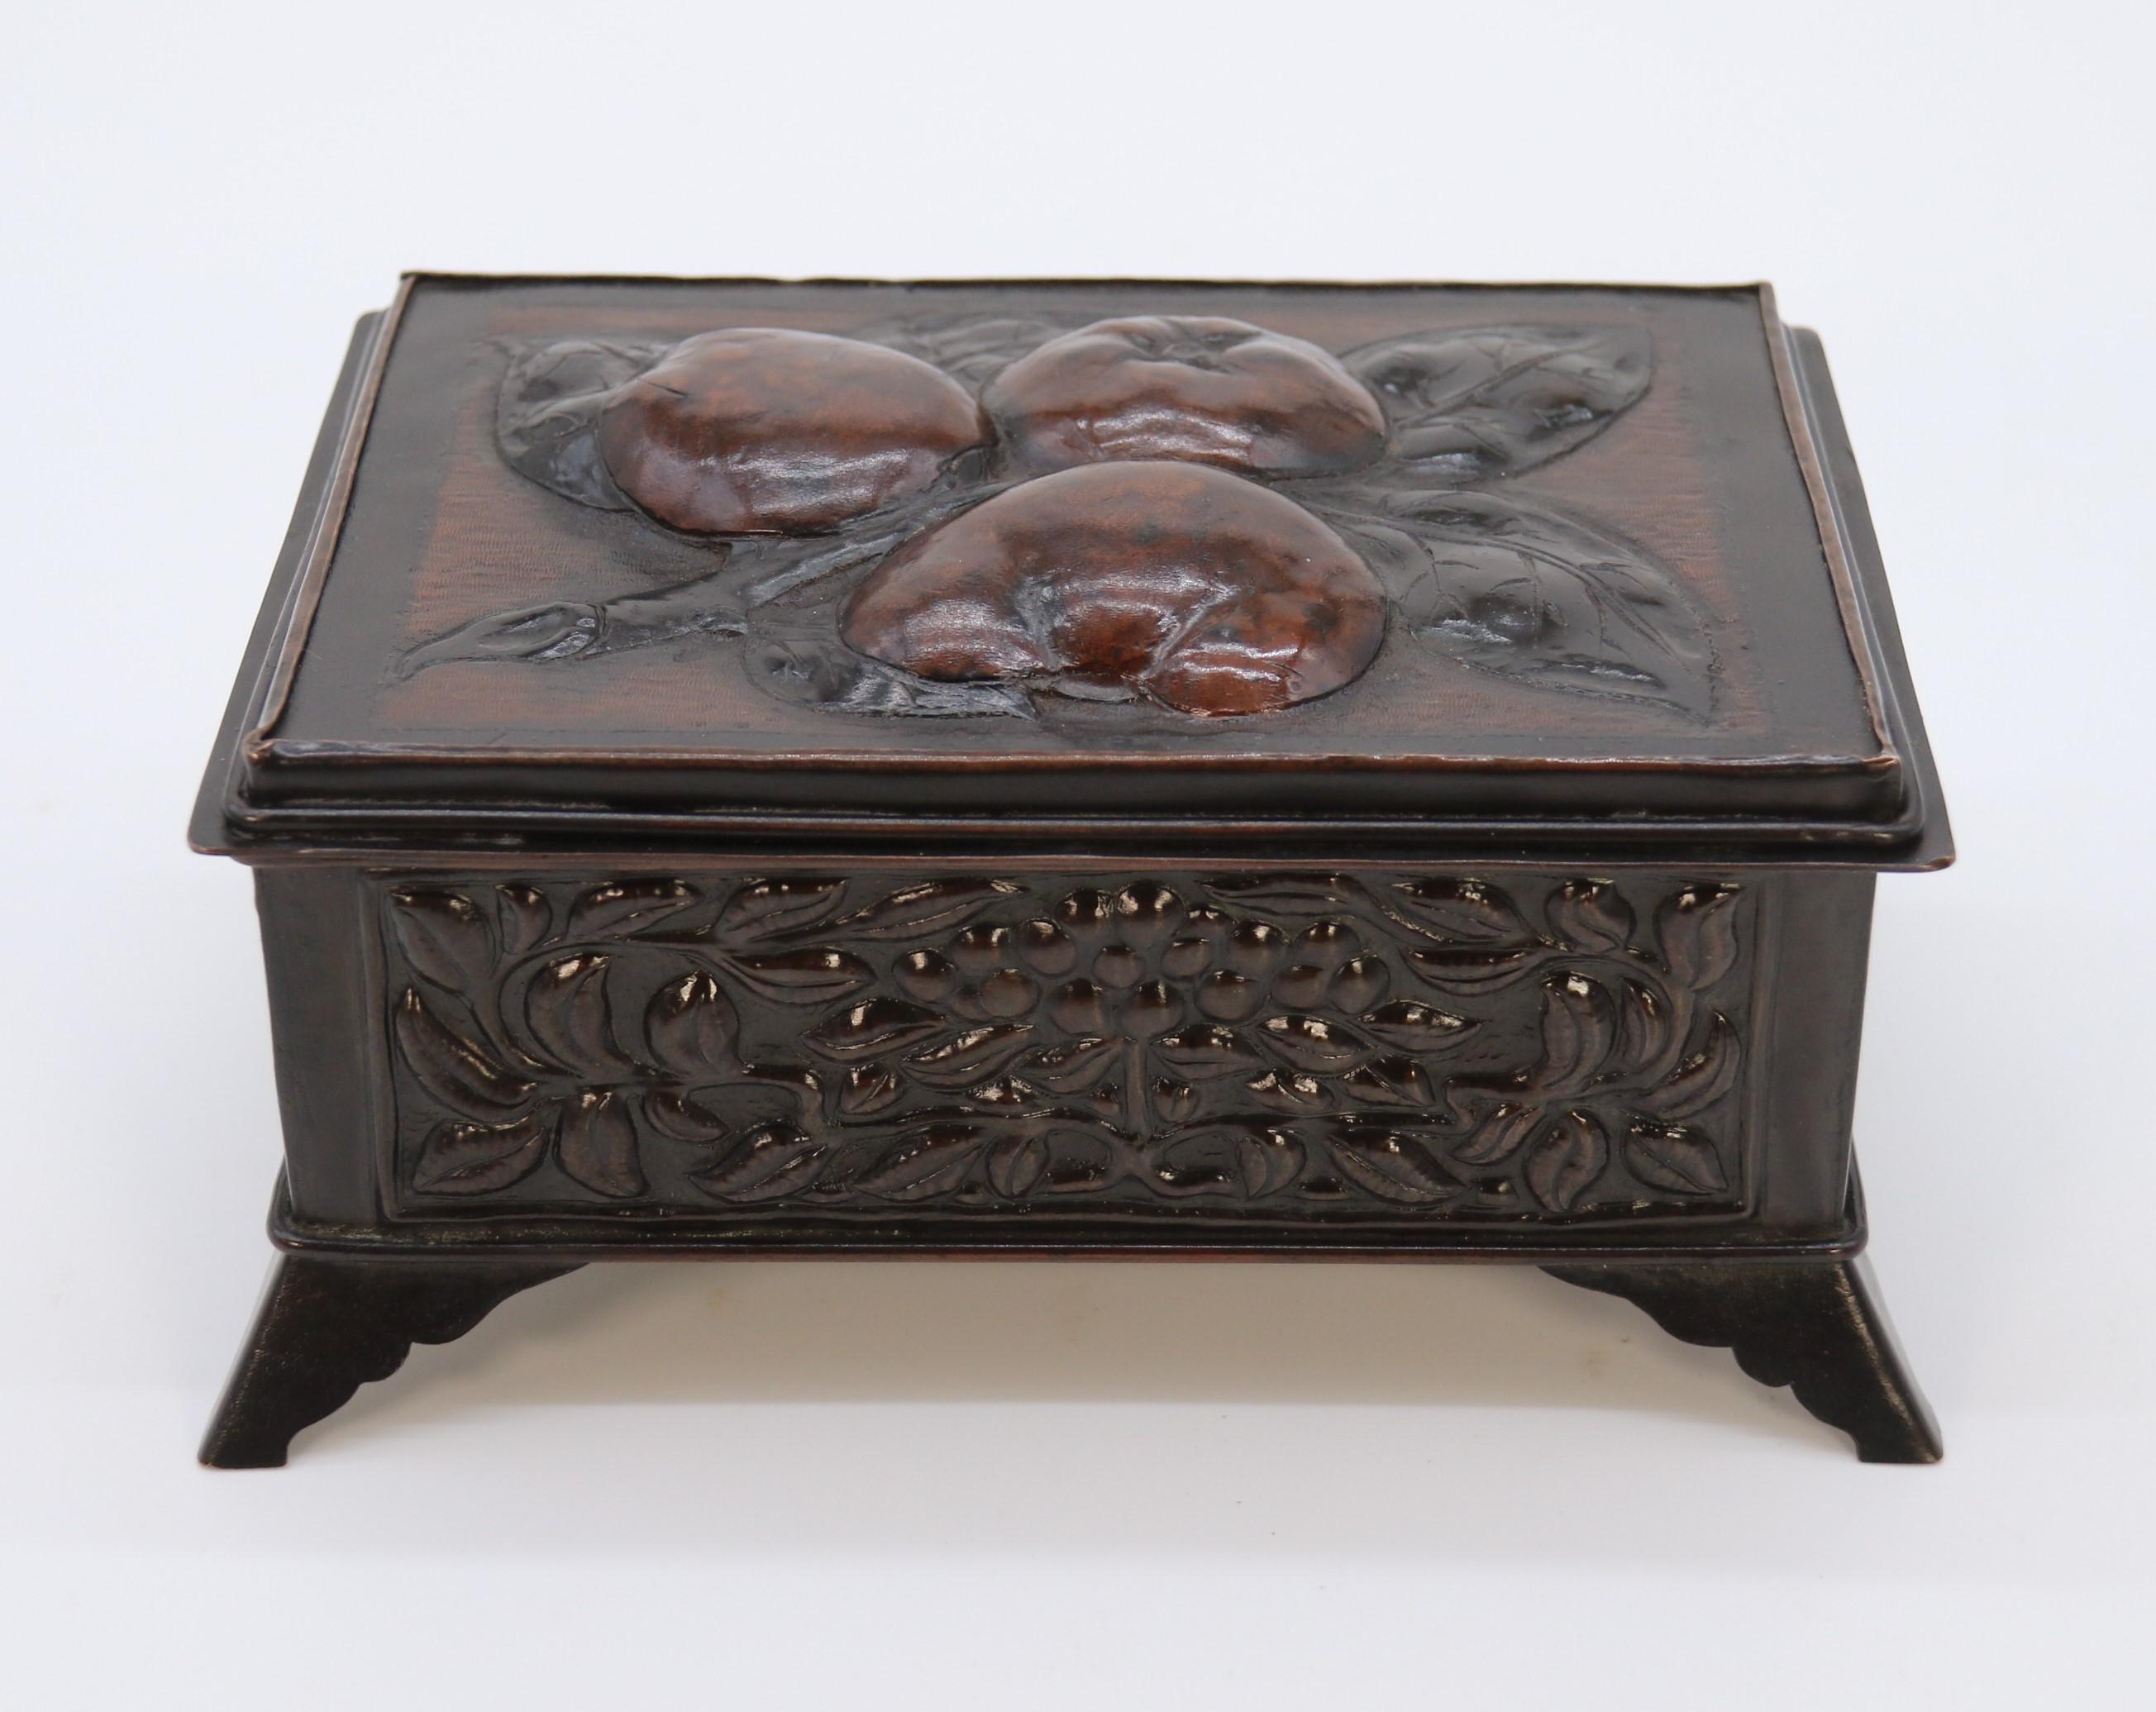 Cette boîte en cuivre faite à la main, très élégante et très bien exécutée, date de la fin du XIXe siècle. Il est monté sur des pieds en forme d'étriers évasés qui sont fixés à la base, laquelle est finie par un petit bord roulé soigné. La face